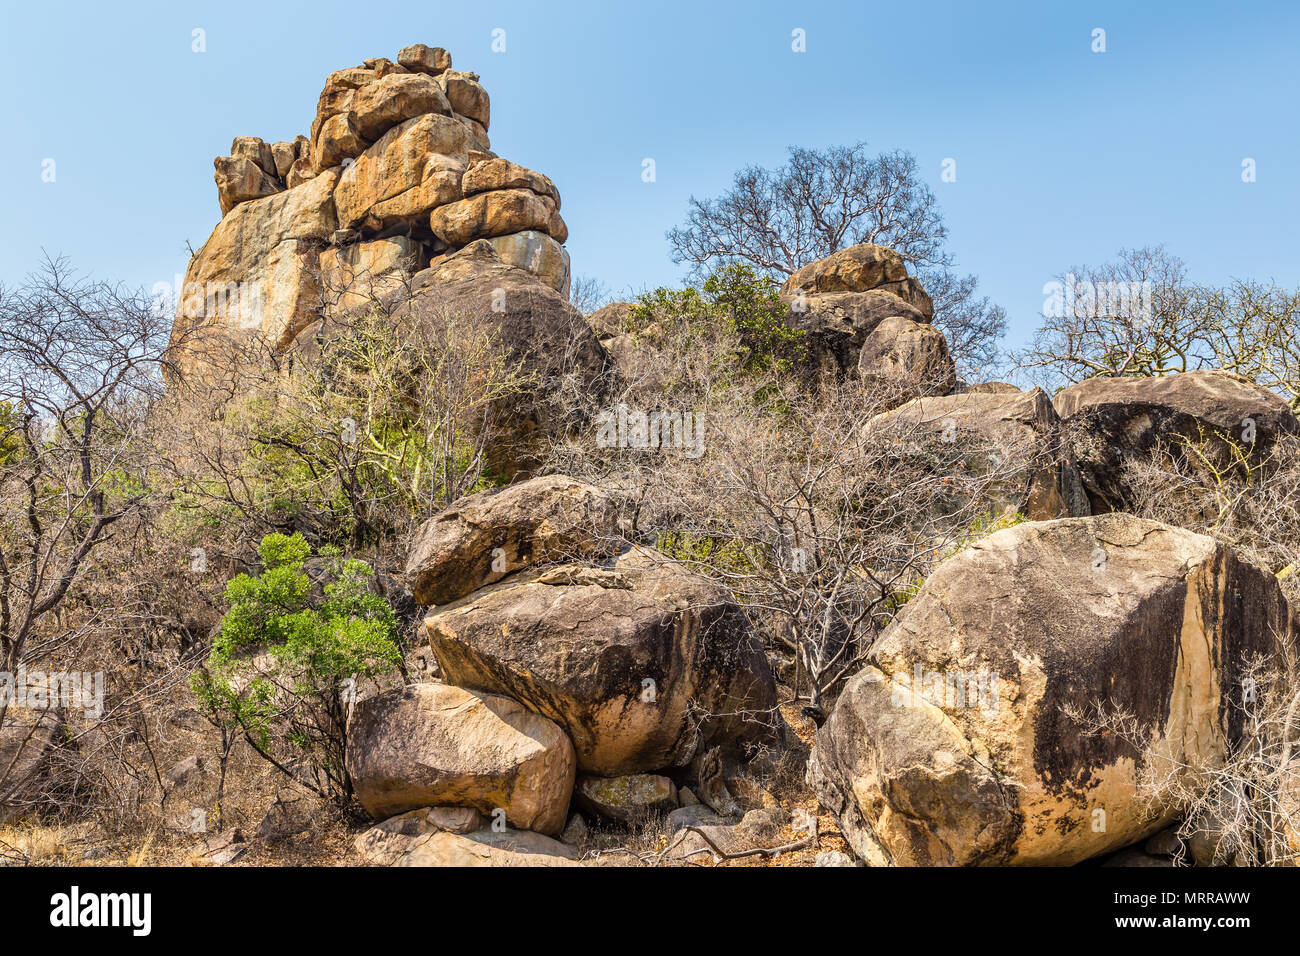 Rocce di bilanciamento in Matobo National Park, Zimbabwe, formato da milioni di anni di esposizione agli agenti atmosferici. Settembre 26, 2016. Foto Stock